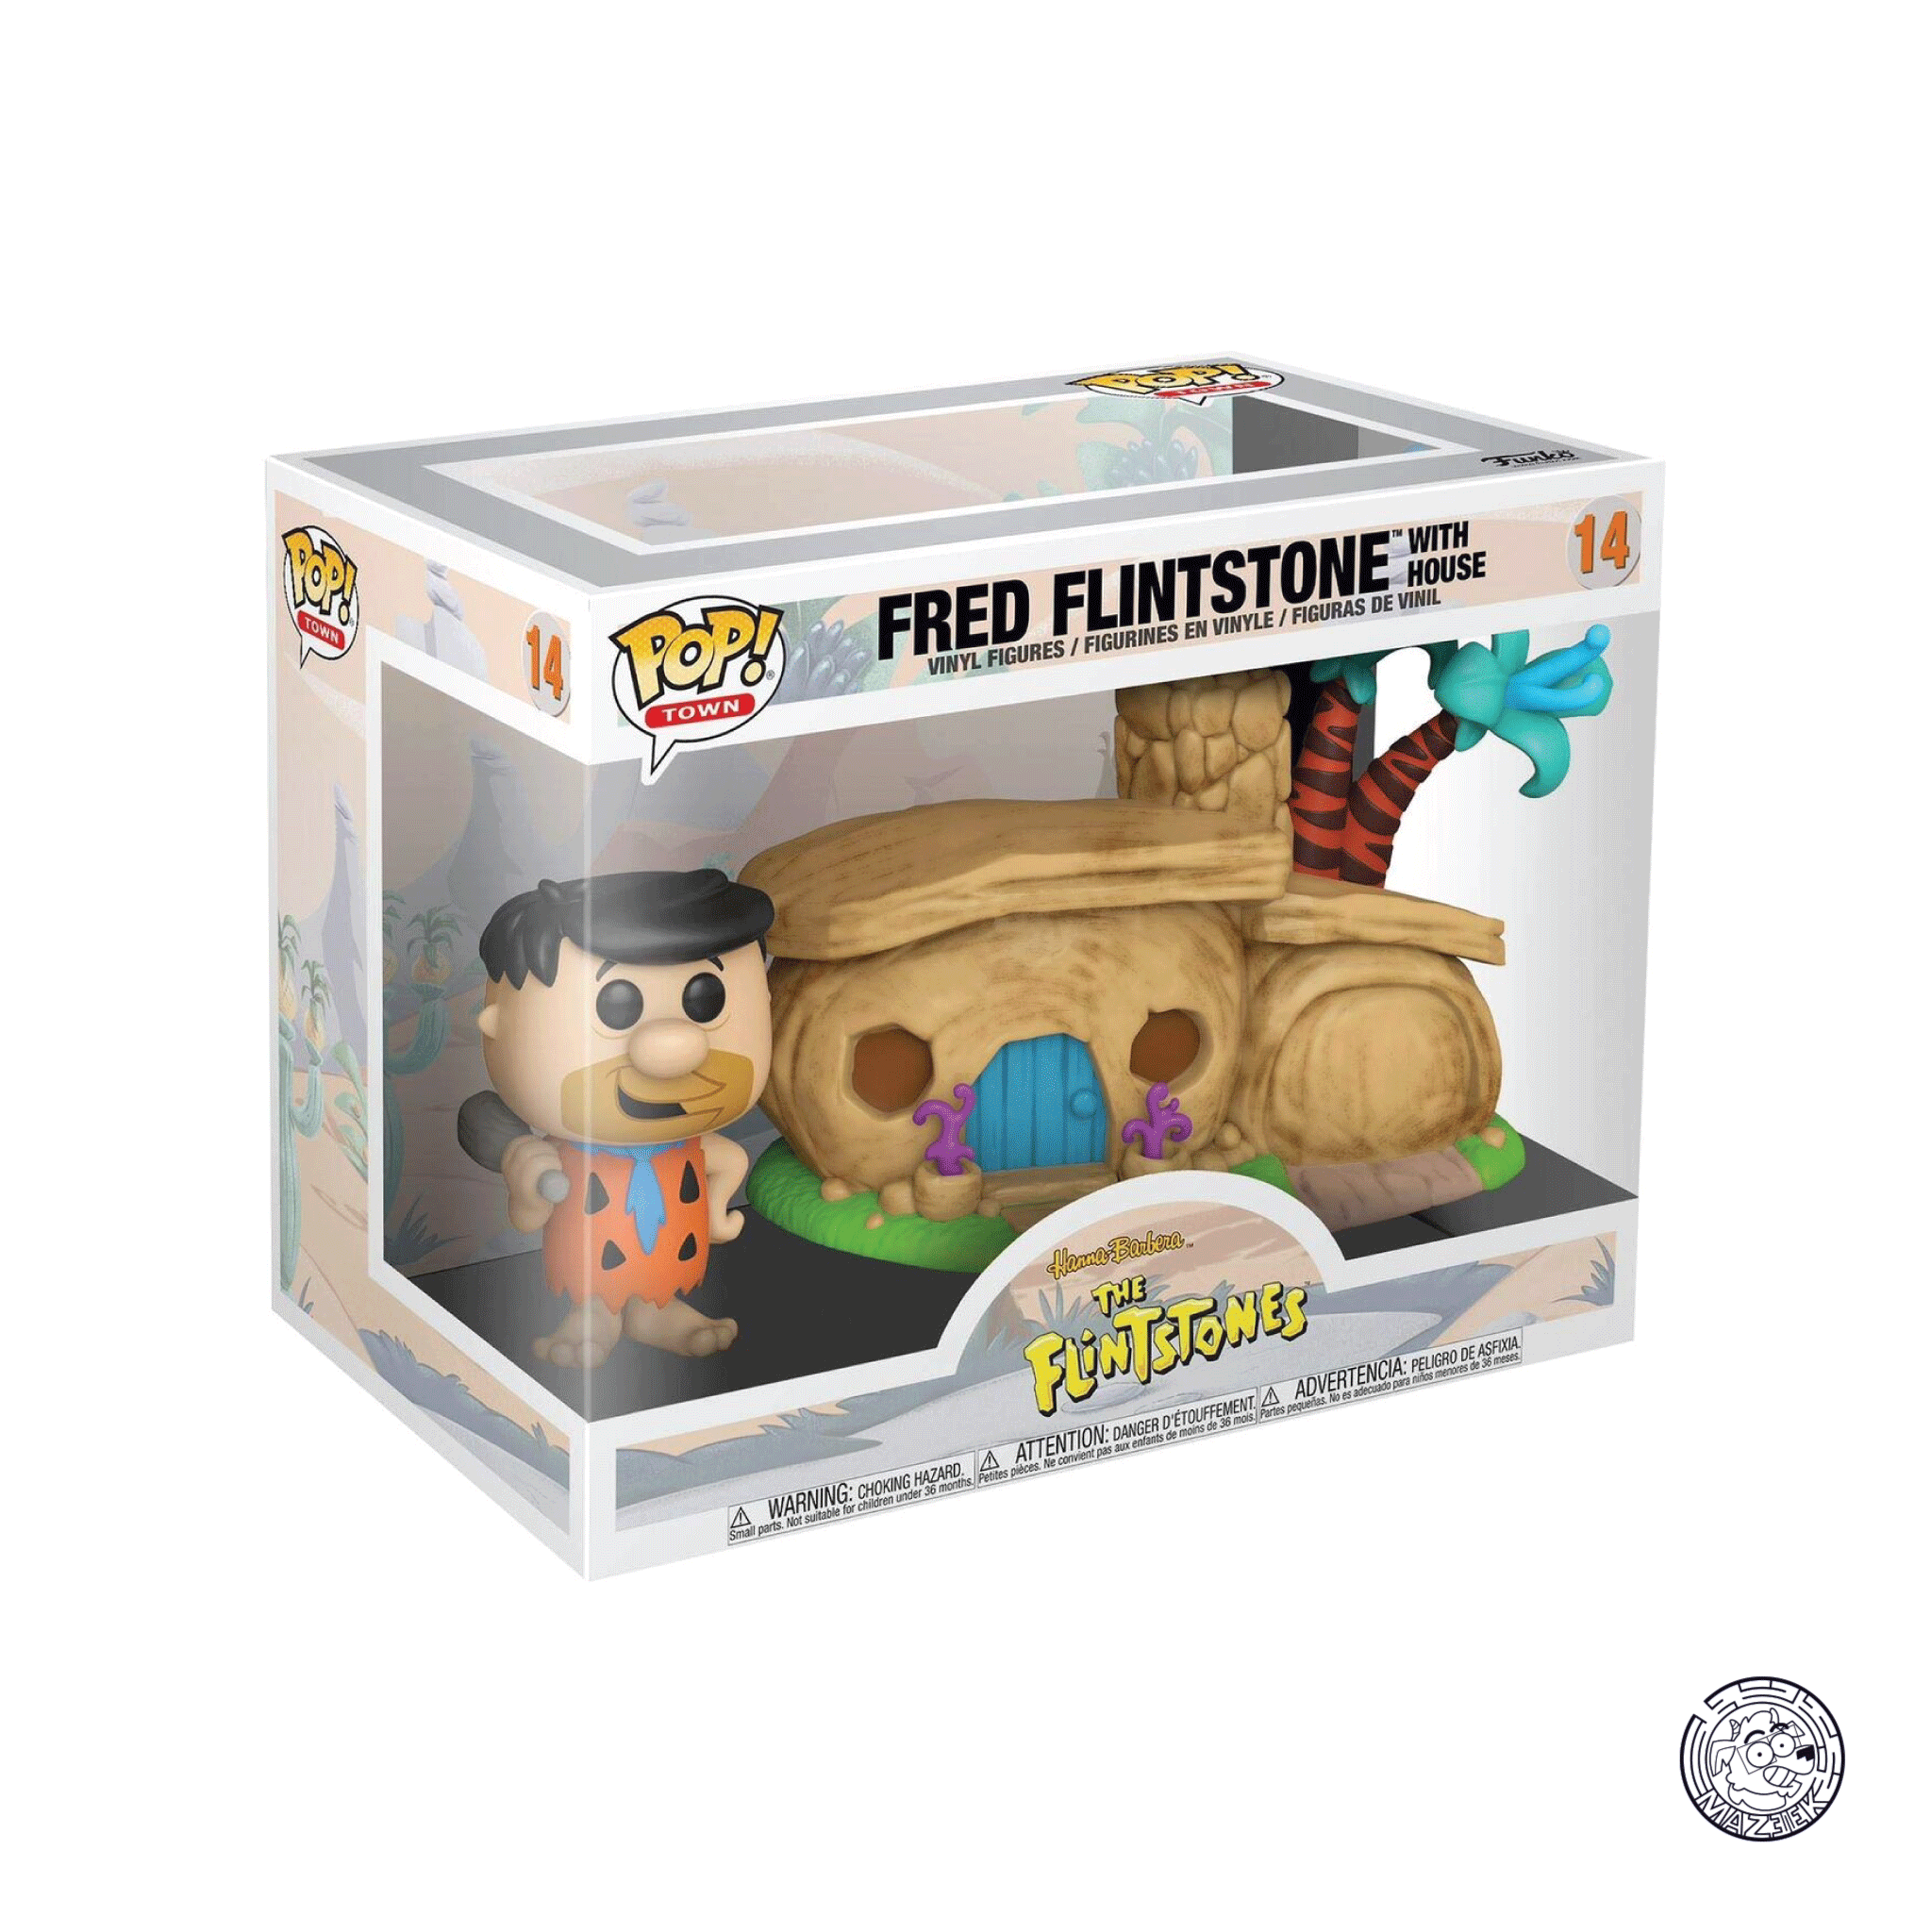 Funko POP! The Flintstones: Fred Flintstone with House 14